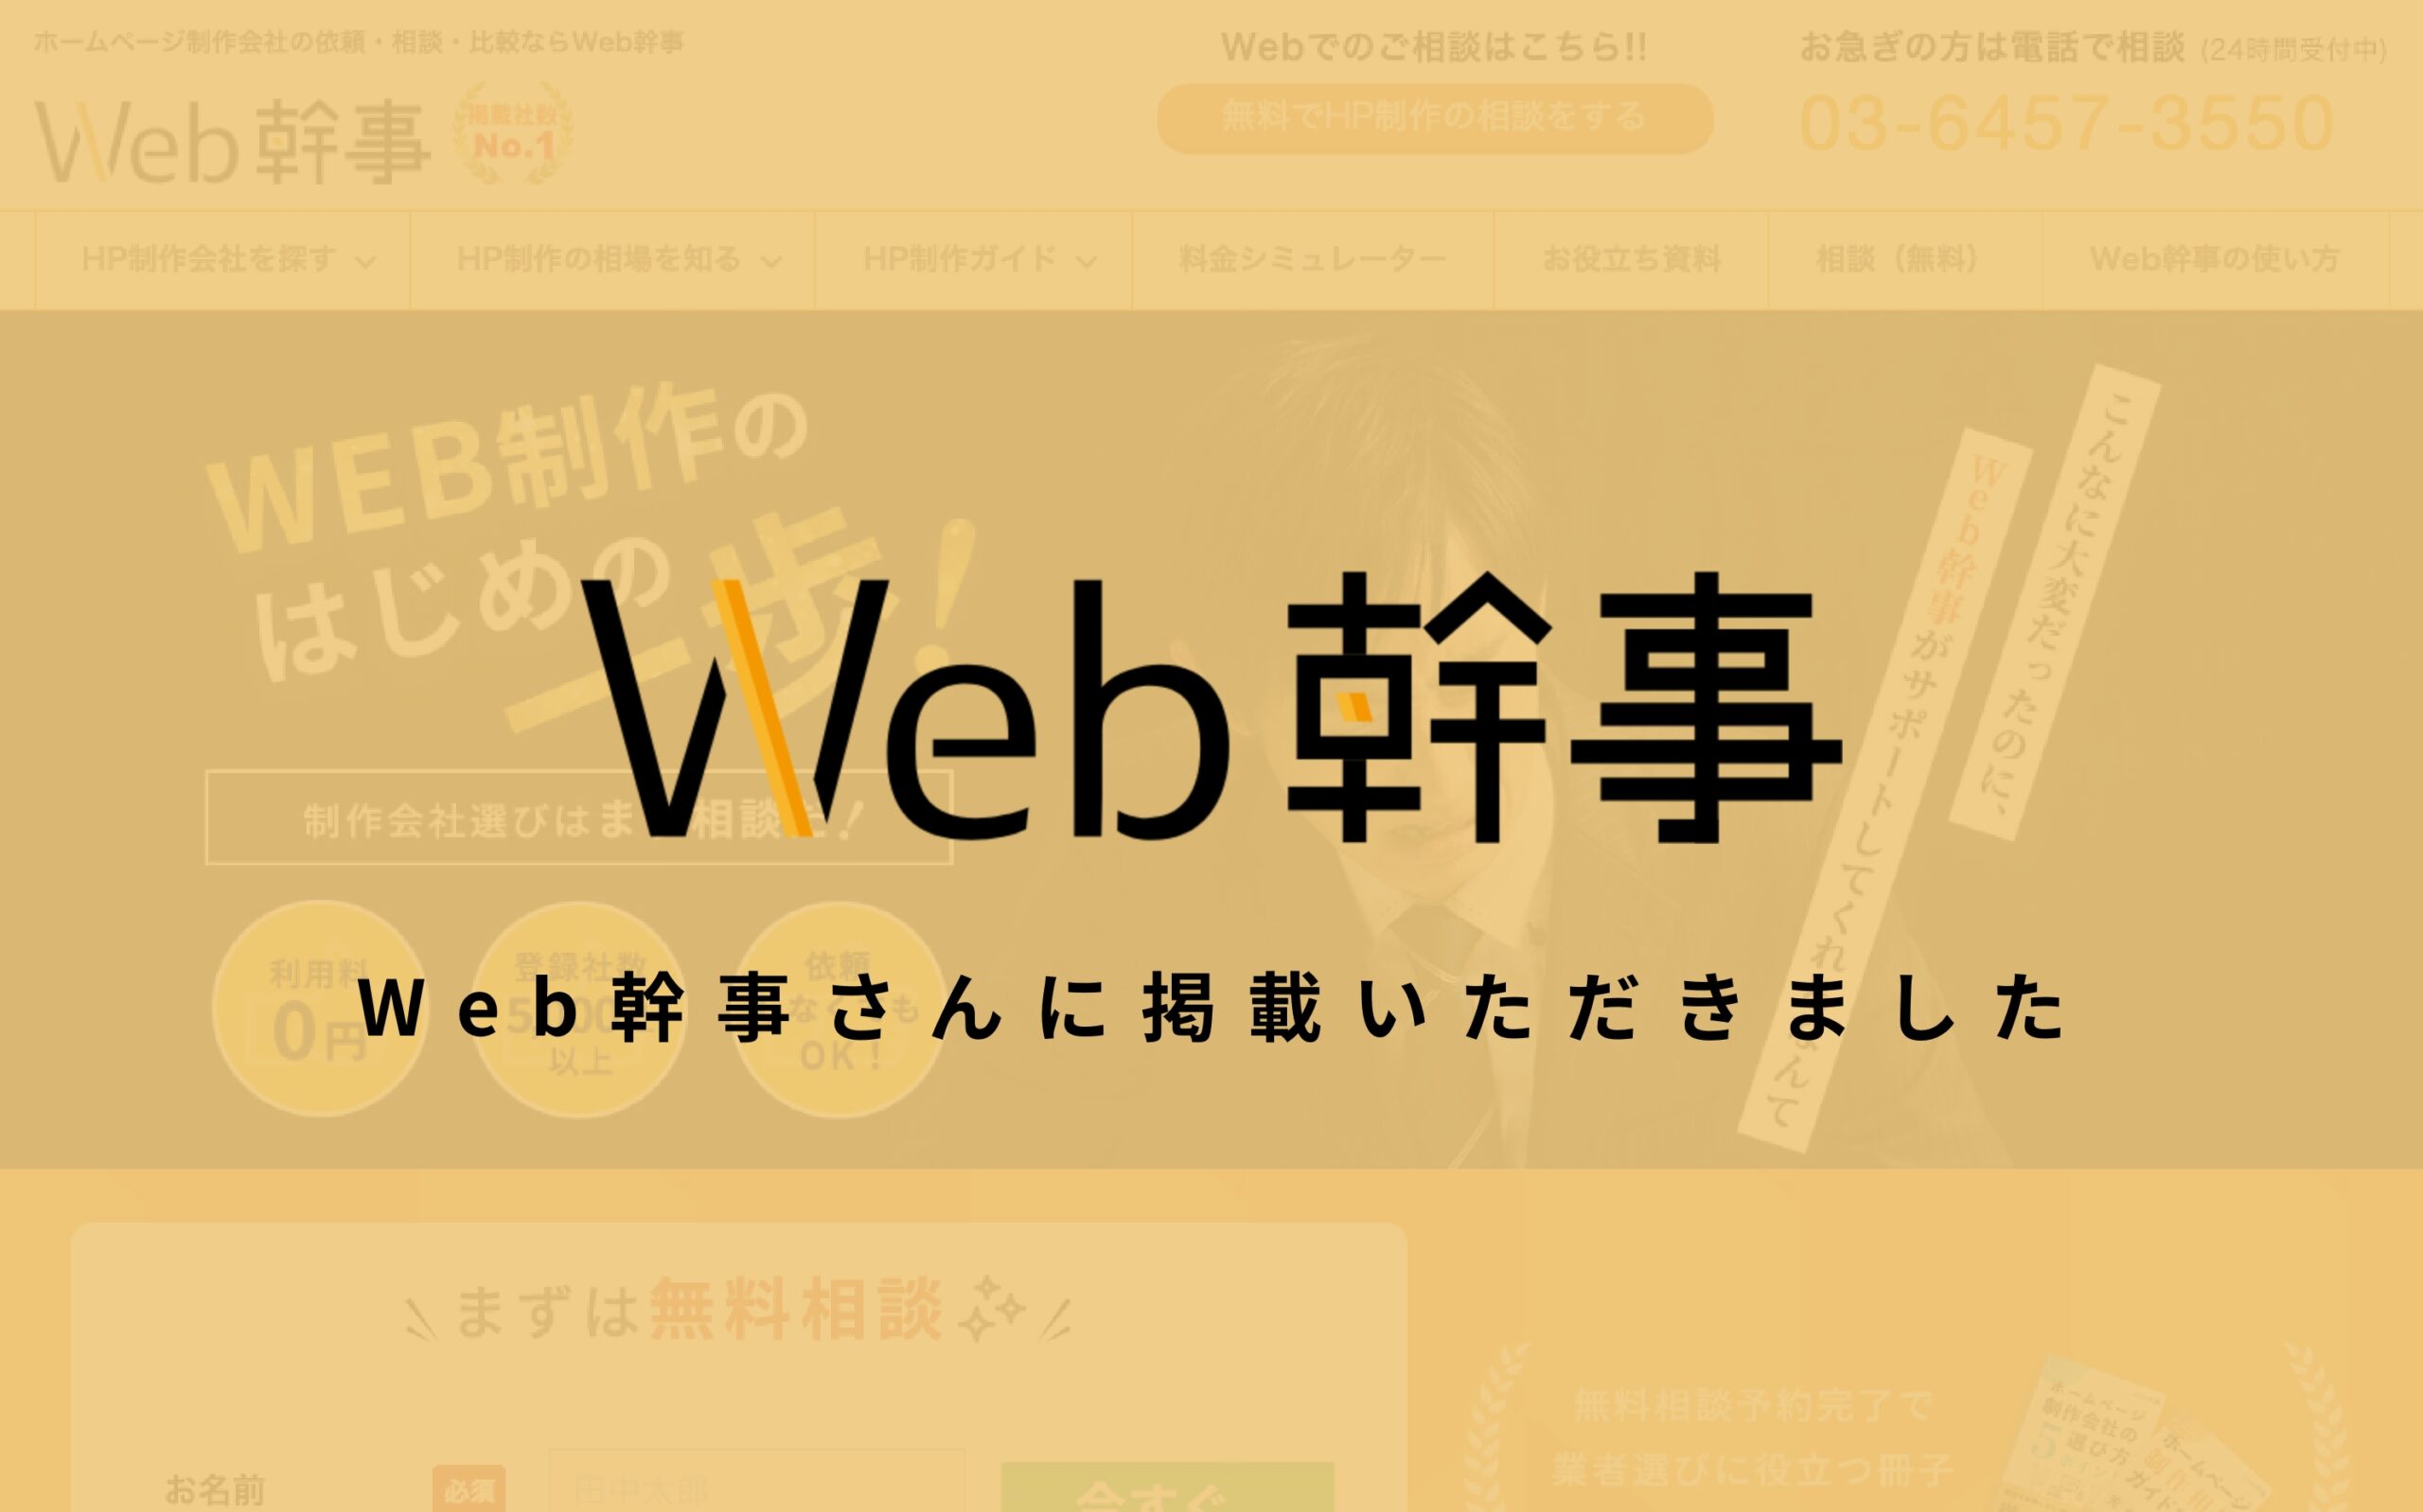 【メディア掲載】日本最大級のホームページ制作相談サイト「Web幹事」さんに掲載いただきました。